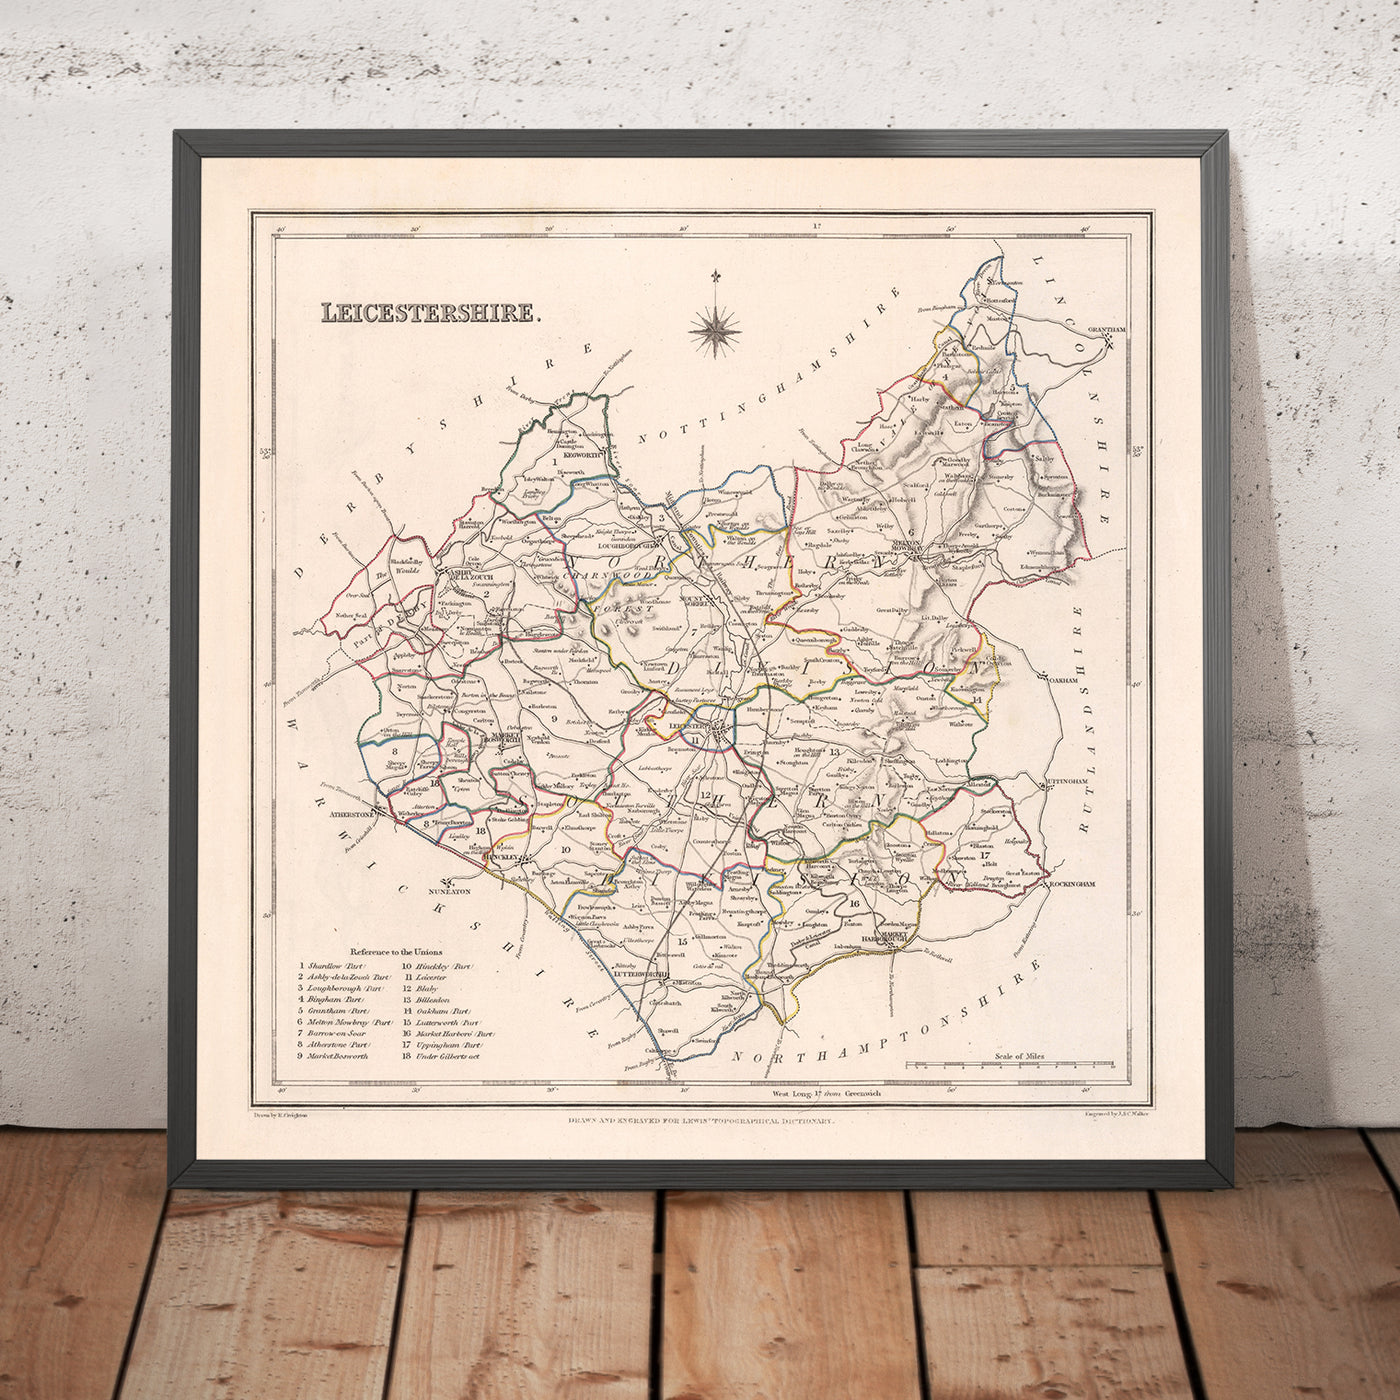 Mapa antiguo de Leicestershire por Samuel Lewis, 1844: Leicester, Melton Mowbray, Loughborough, Hinckley, Ashby-de-la-Zouch